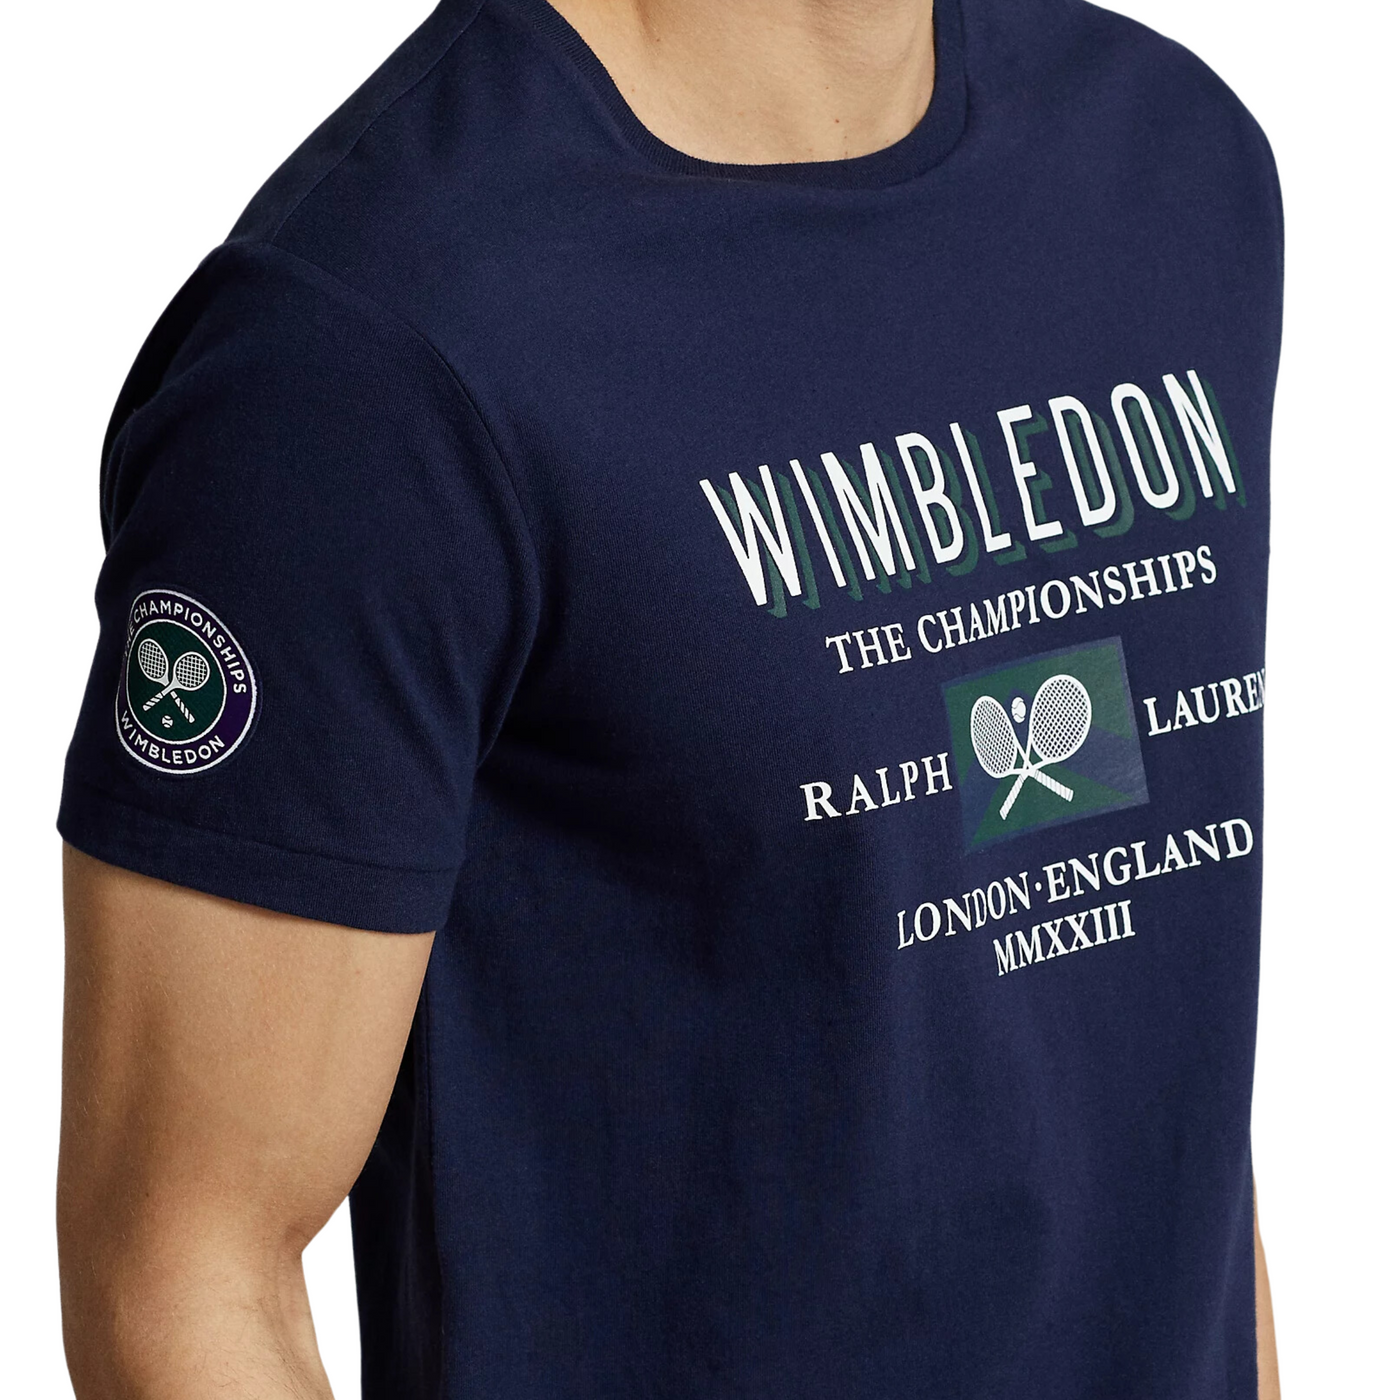 Ralph Lauren Wimbledon Custom Slim Fit T-shirt i Navy